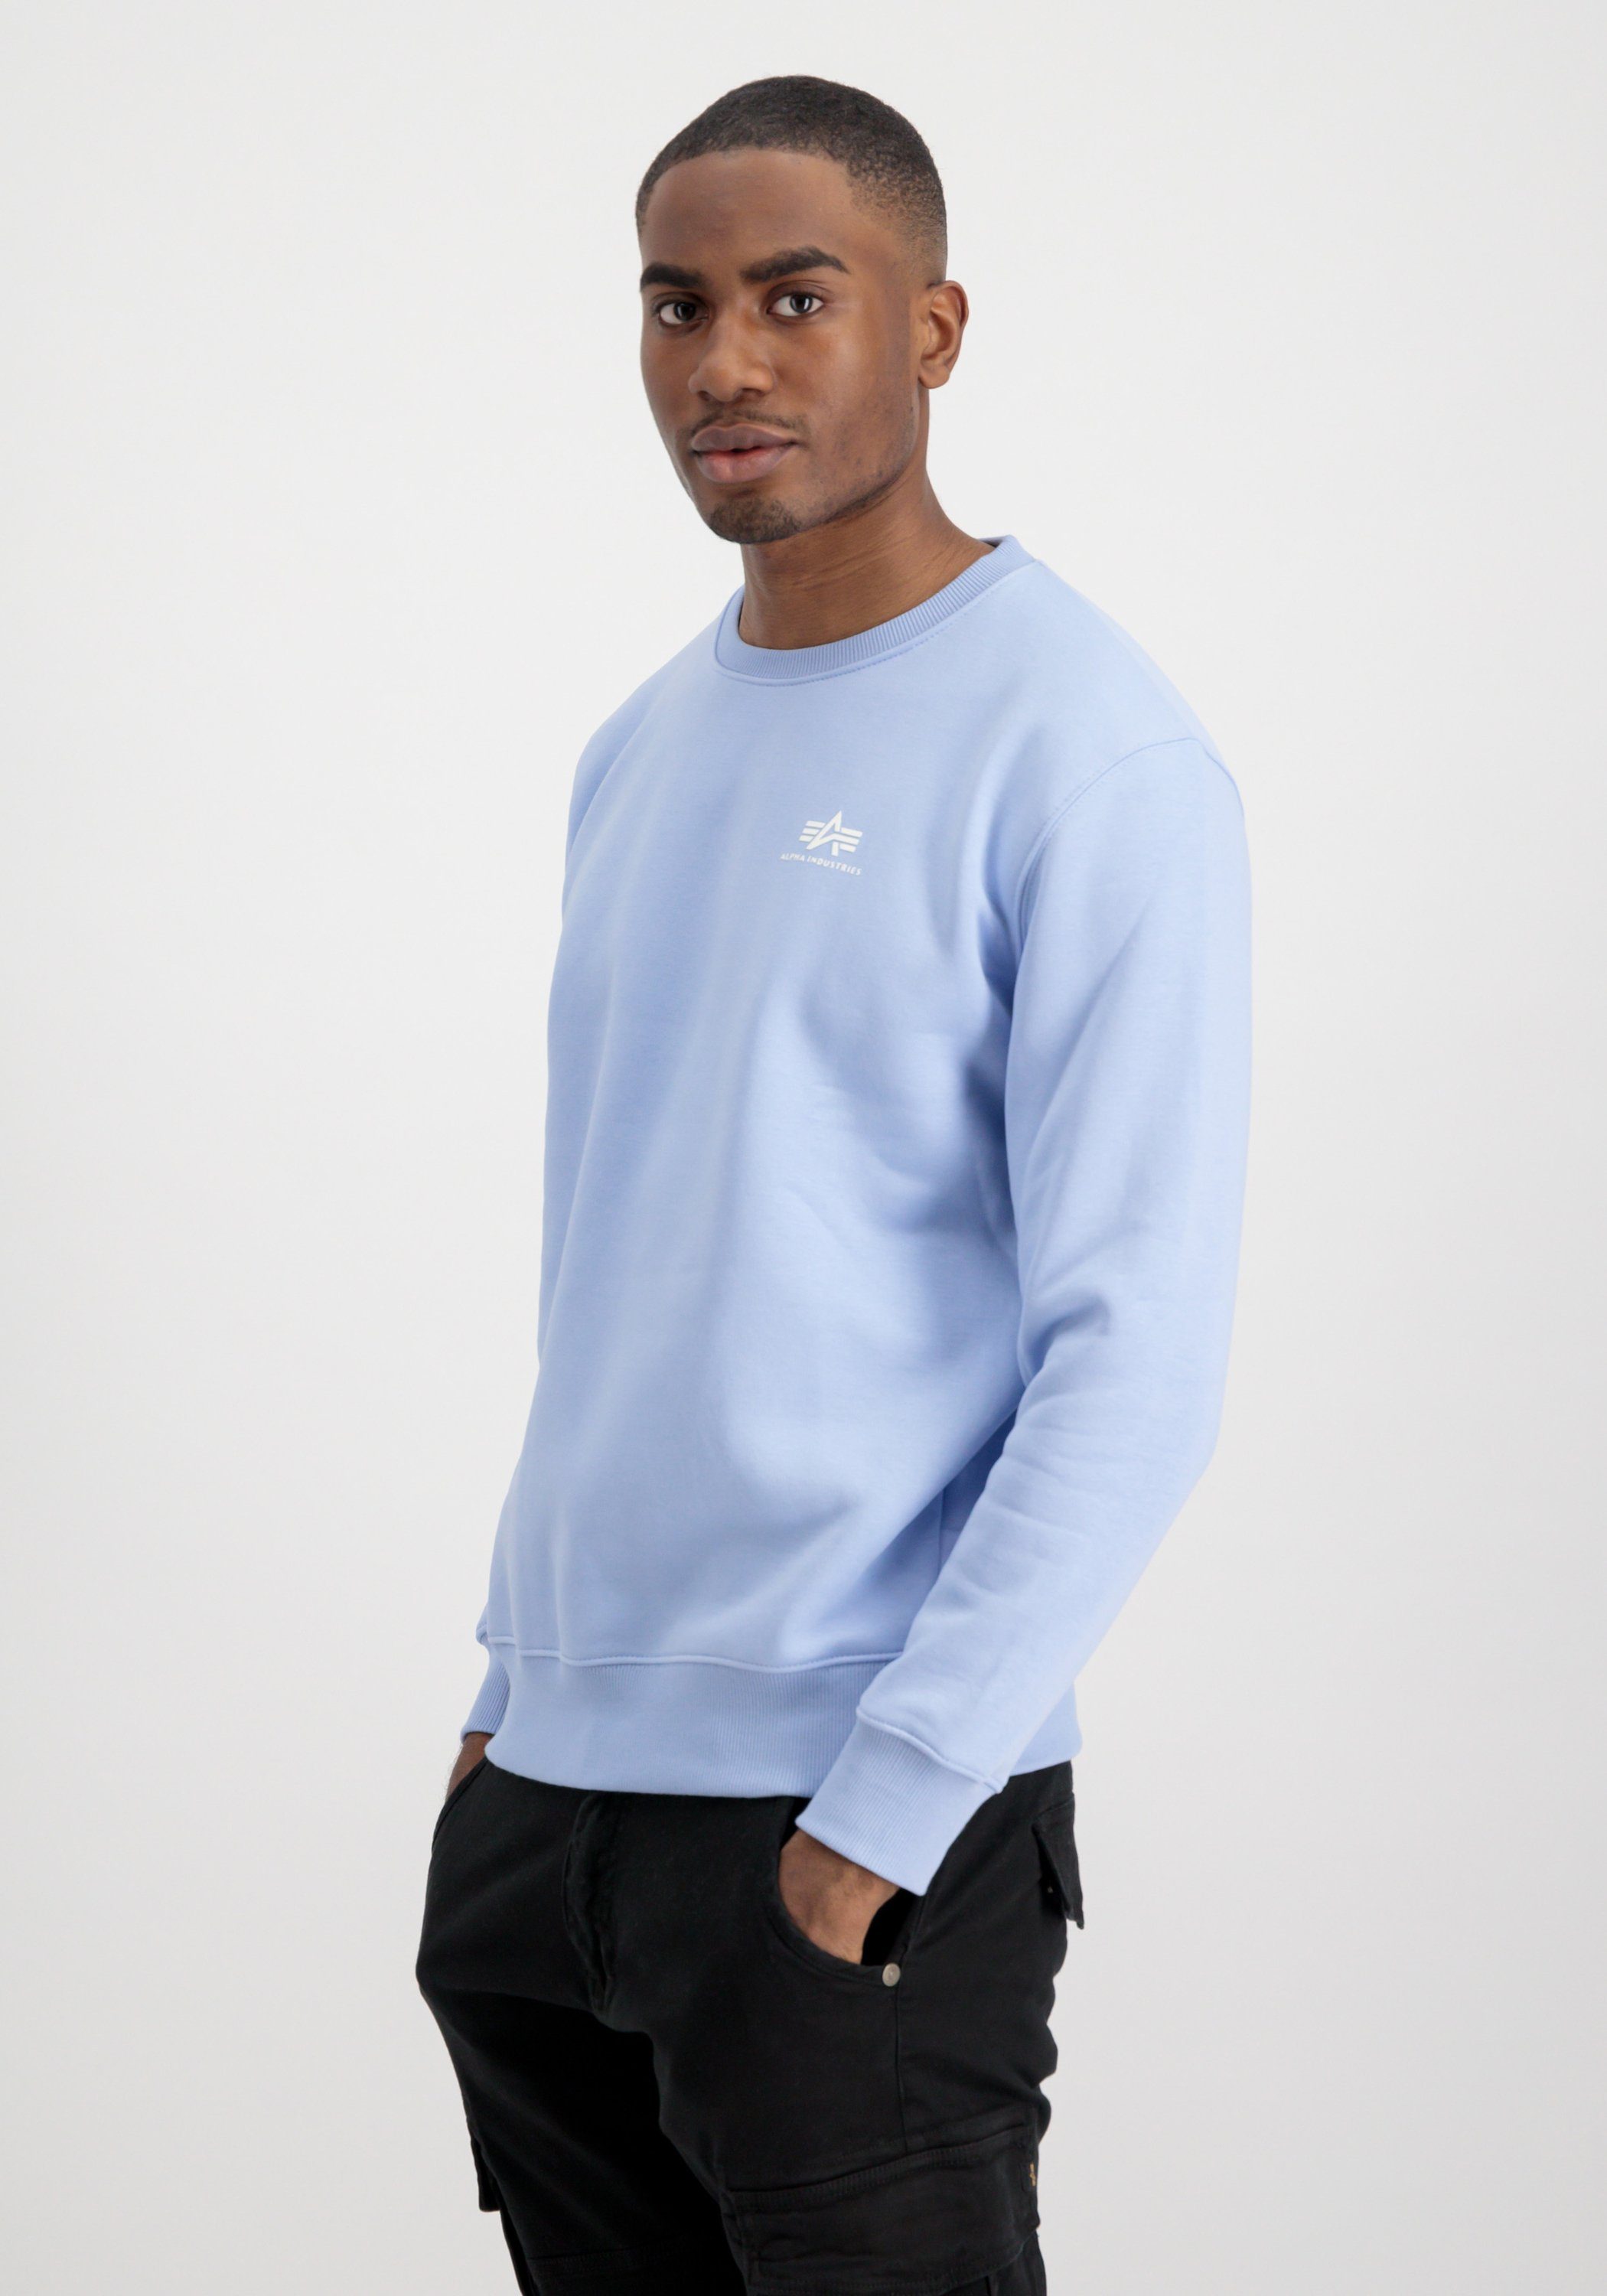 Men Alpha Industries Small Sweater light Sweatshirts Logo Industries Sweater - Basic blue Alpha